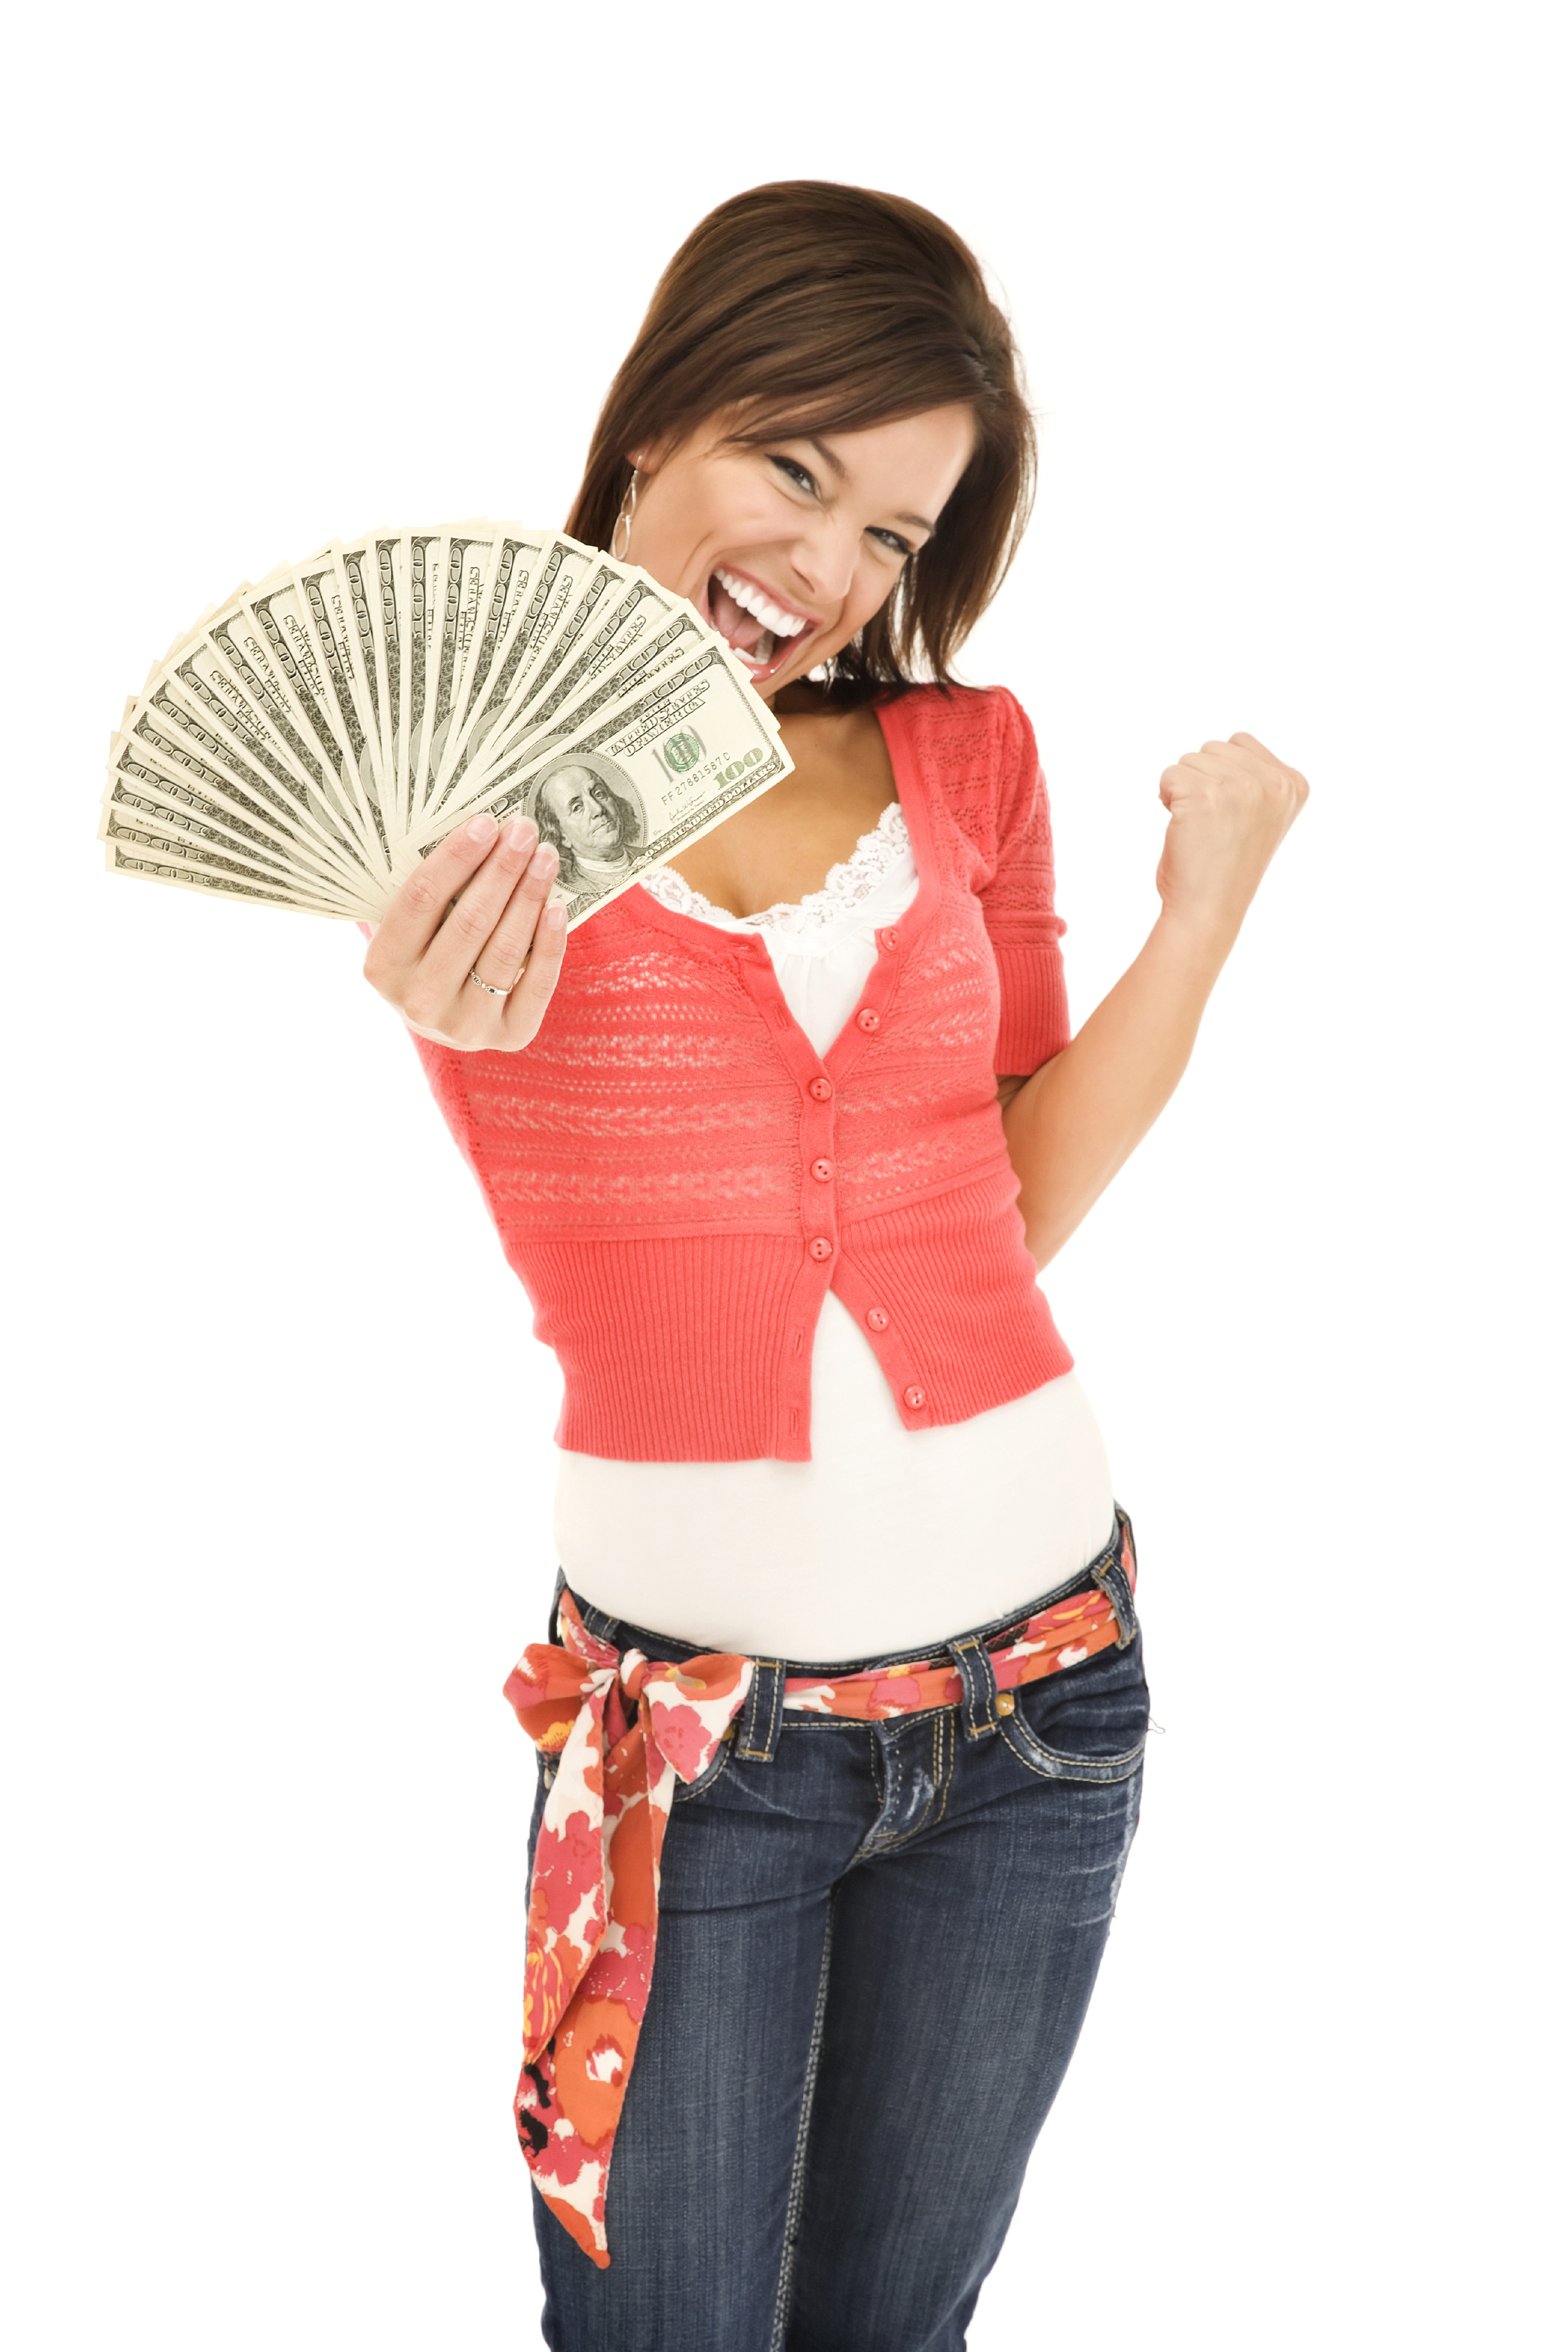 Фото девушки с деньгами в руках